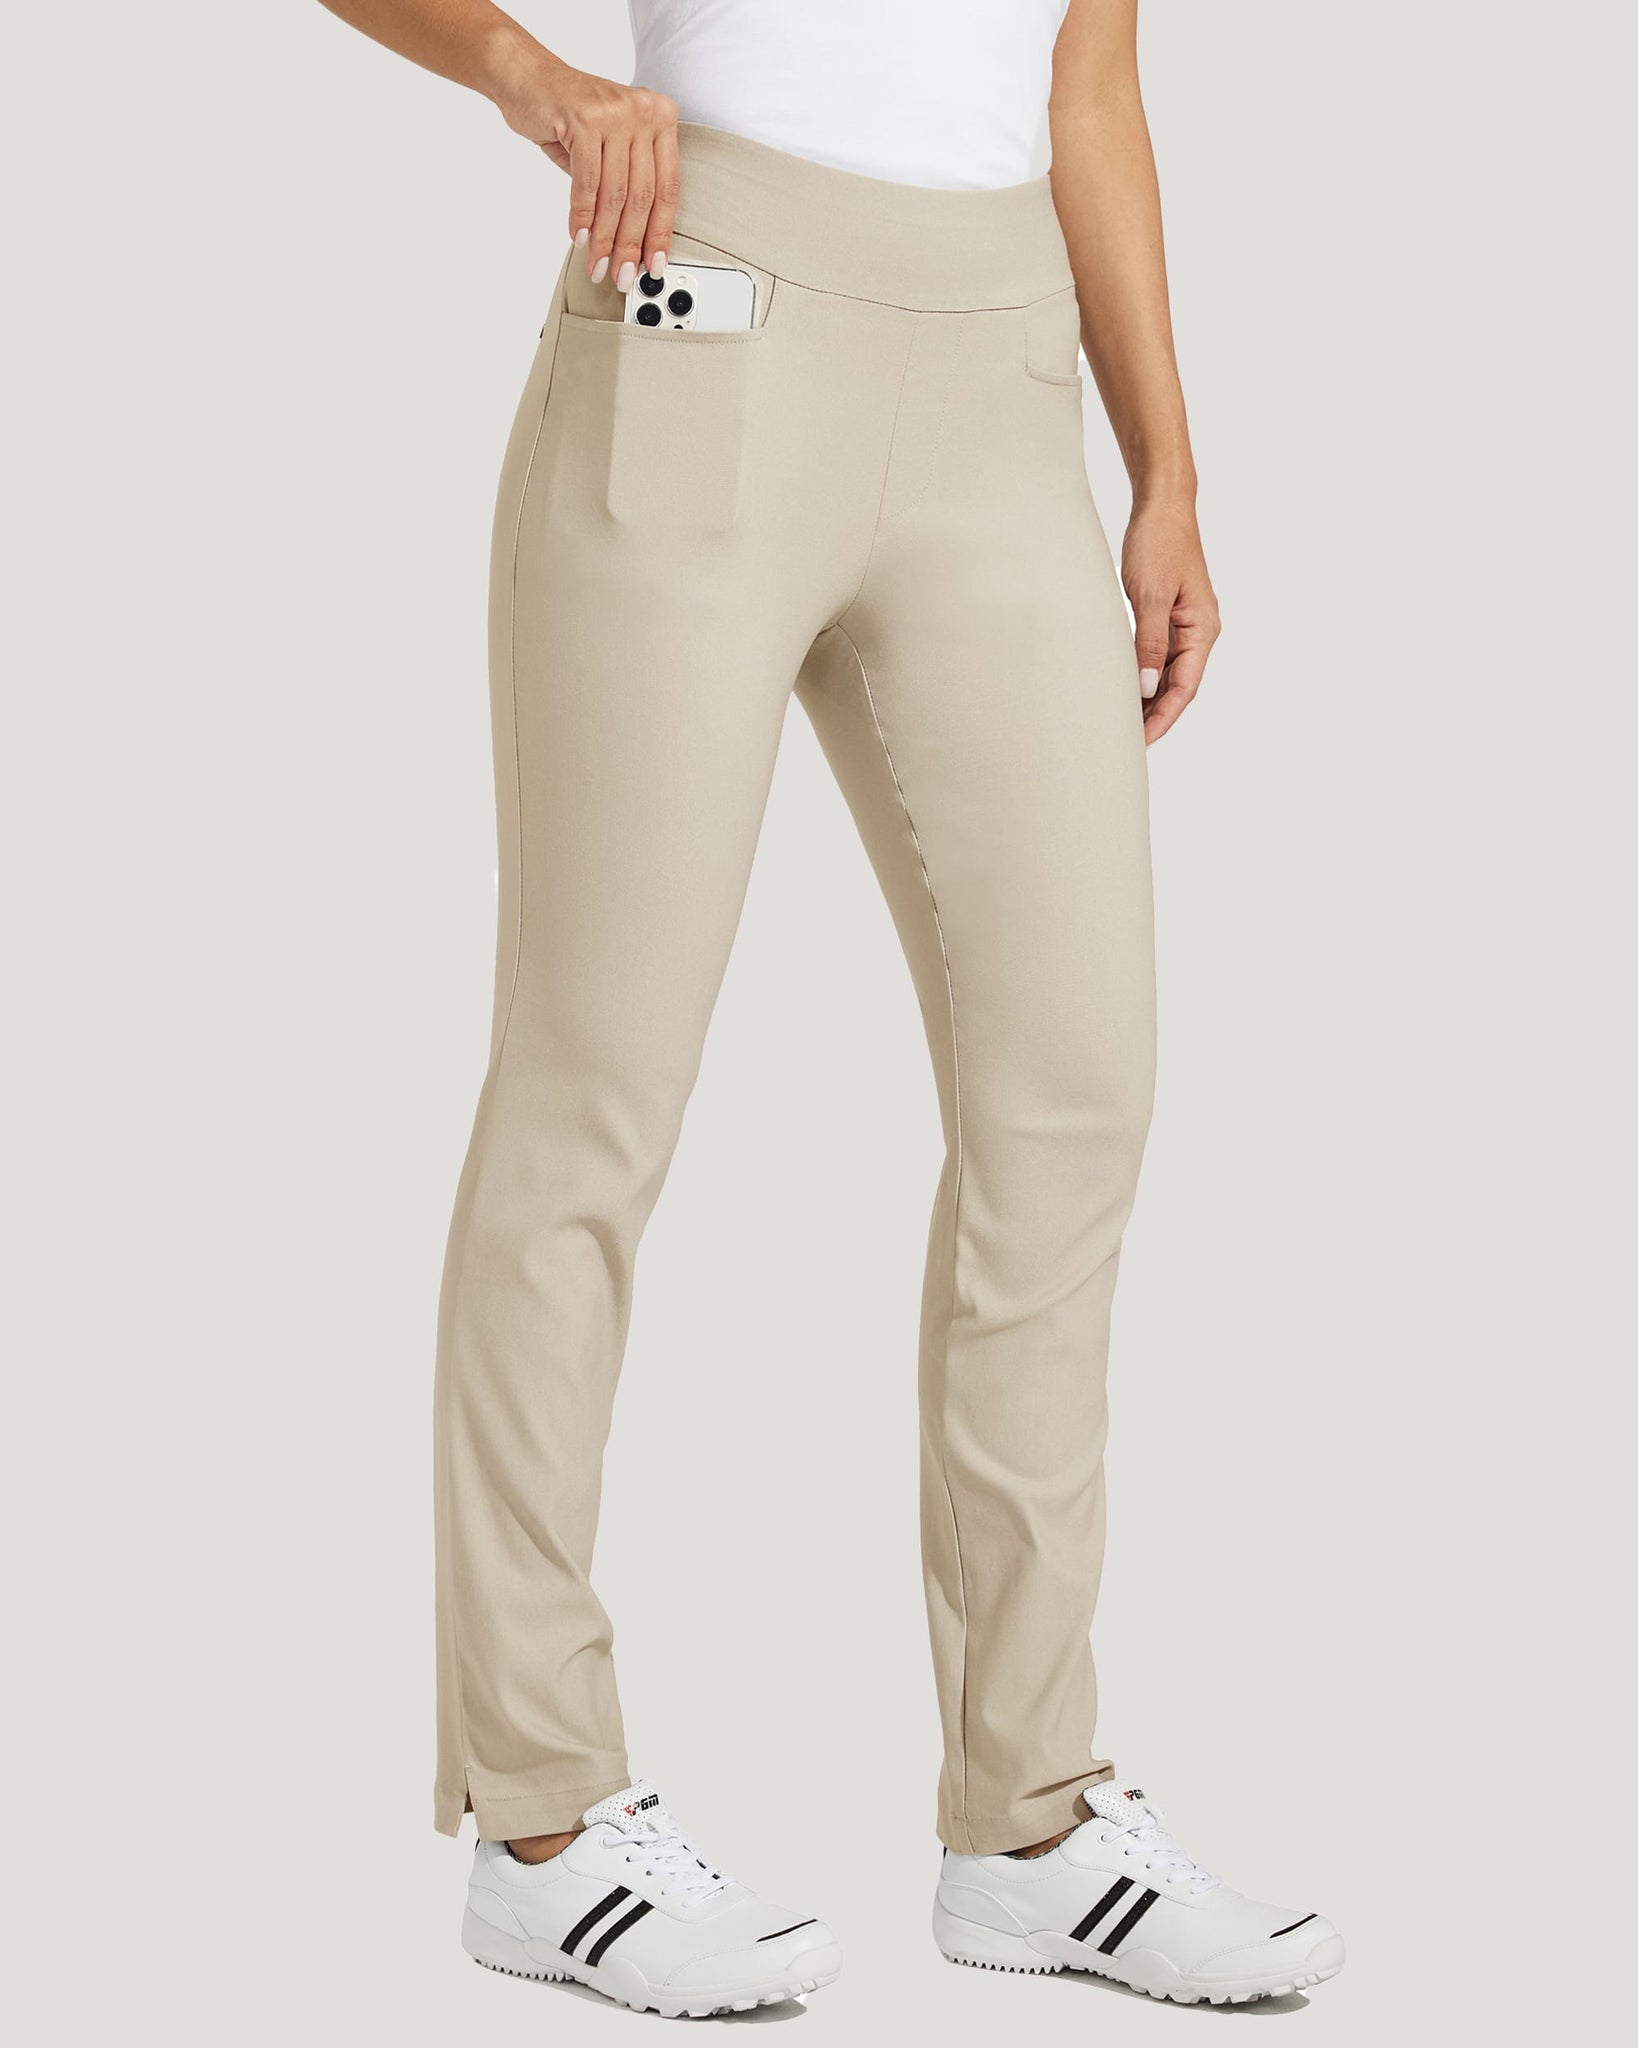 Women's Golf Pull-On Pants_Khaki_model2